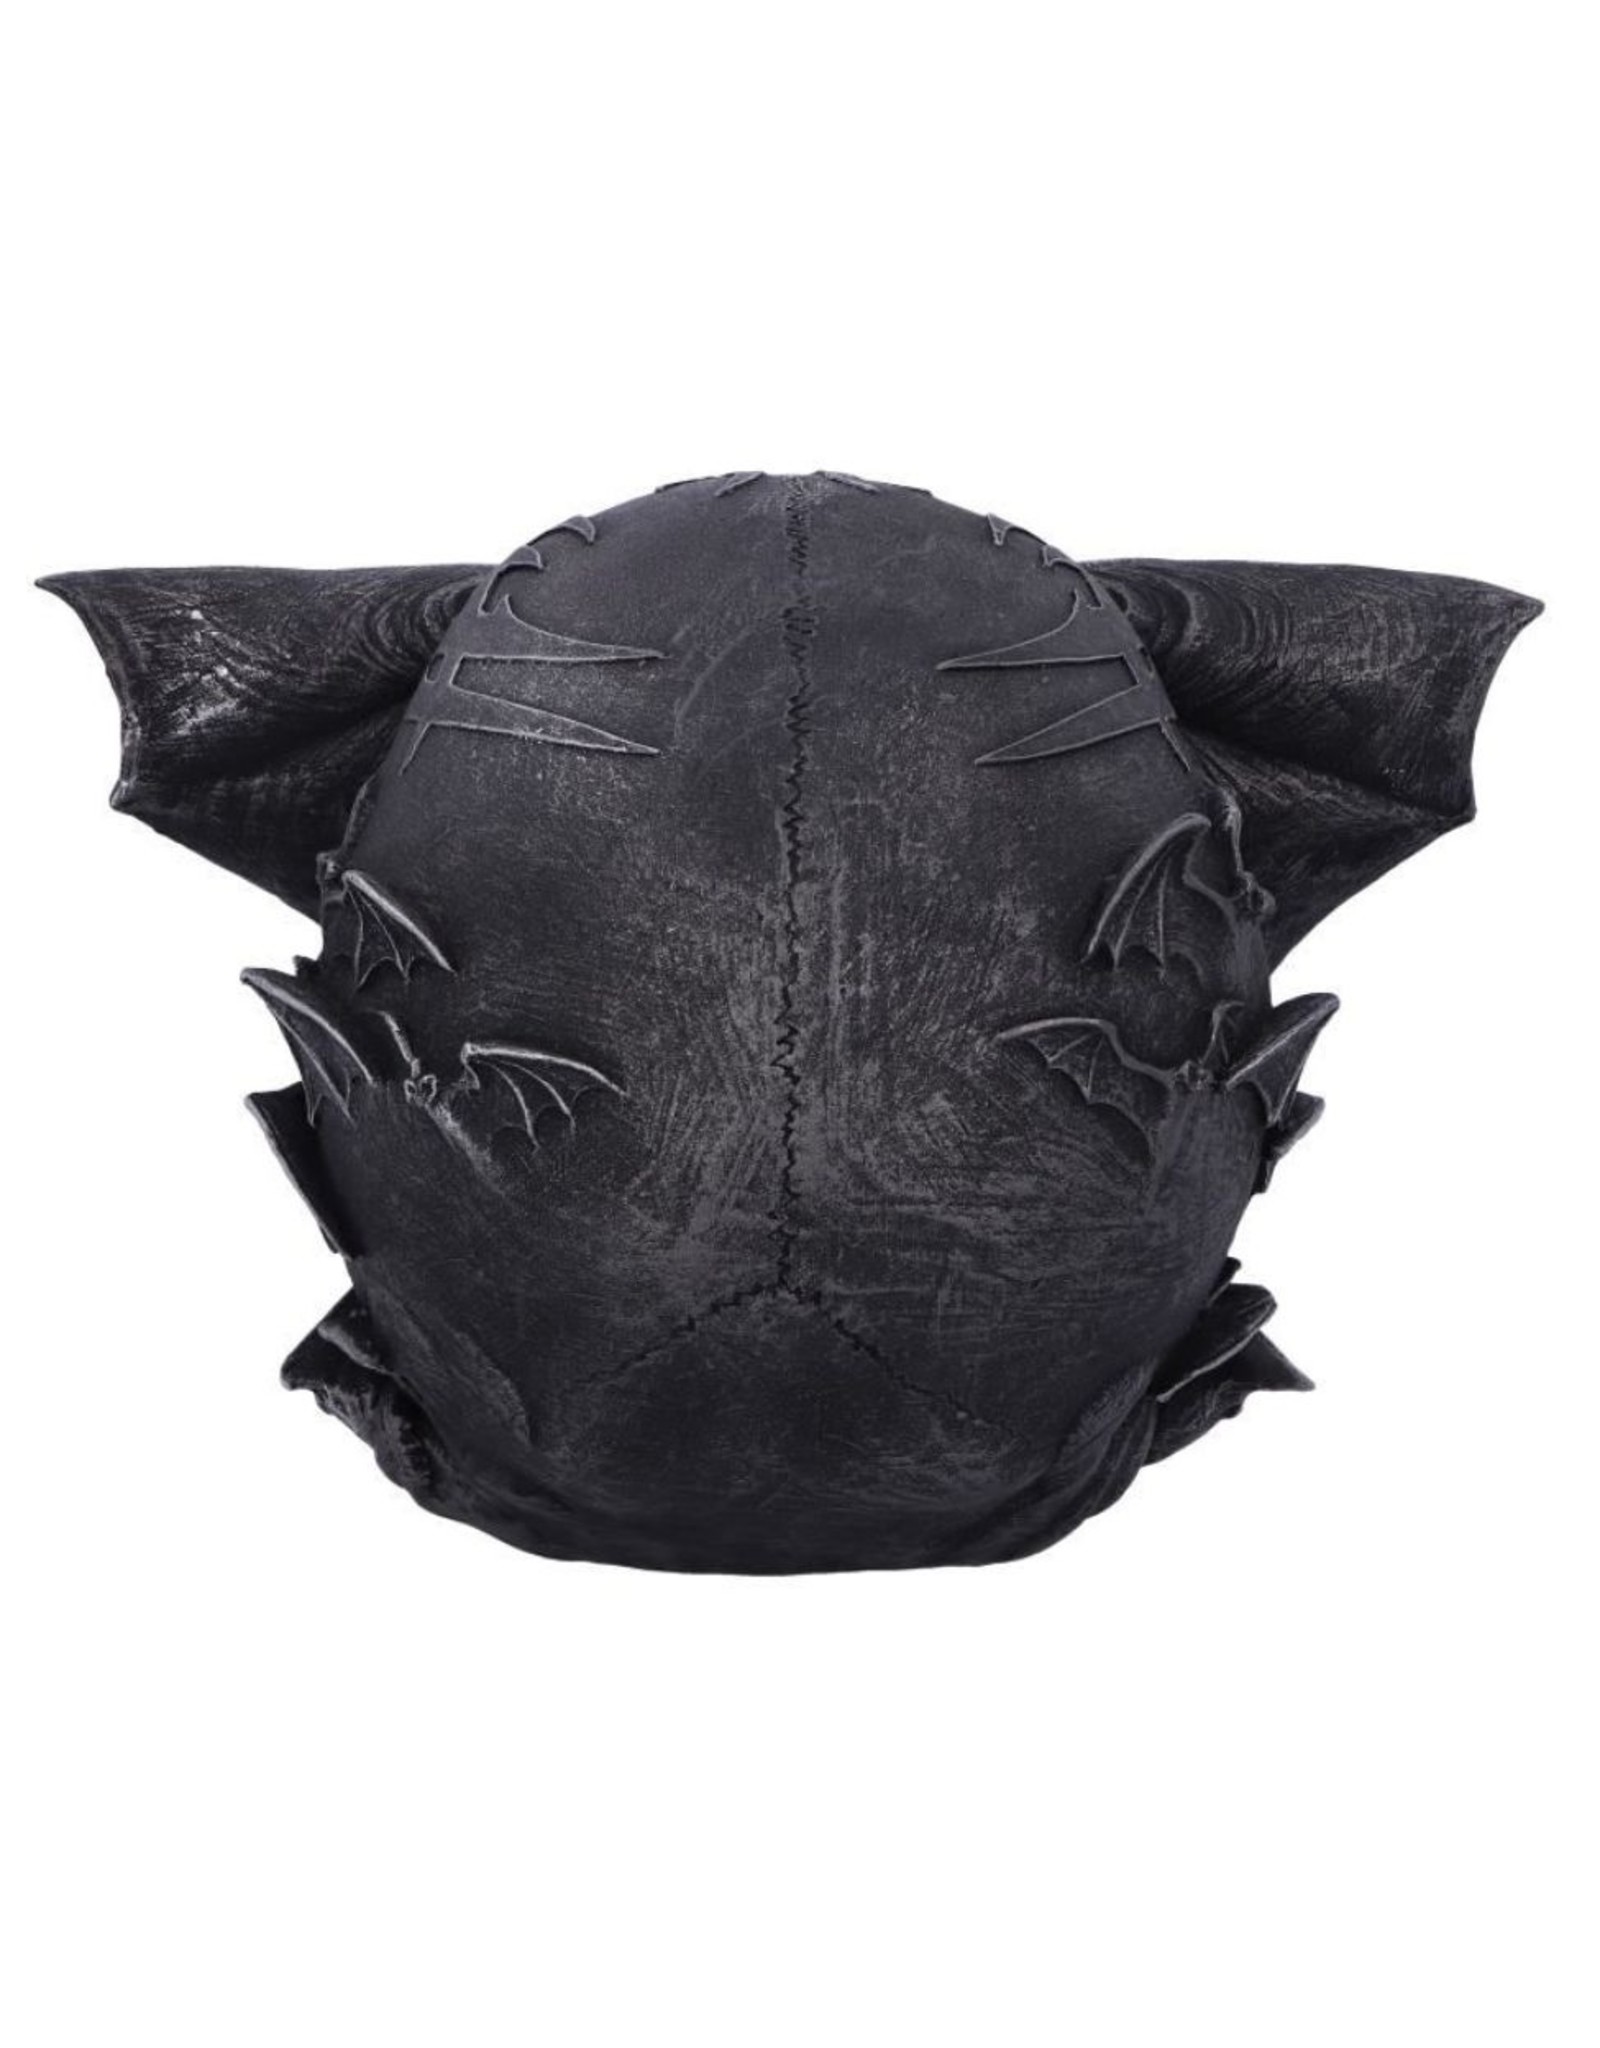 Spiral Direct Giftware & Lifestyle - Dark Gothic Bat Skull Spiral